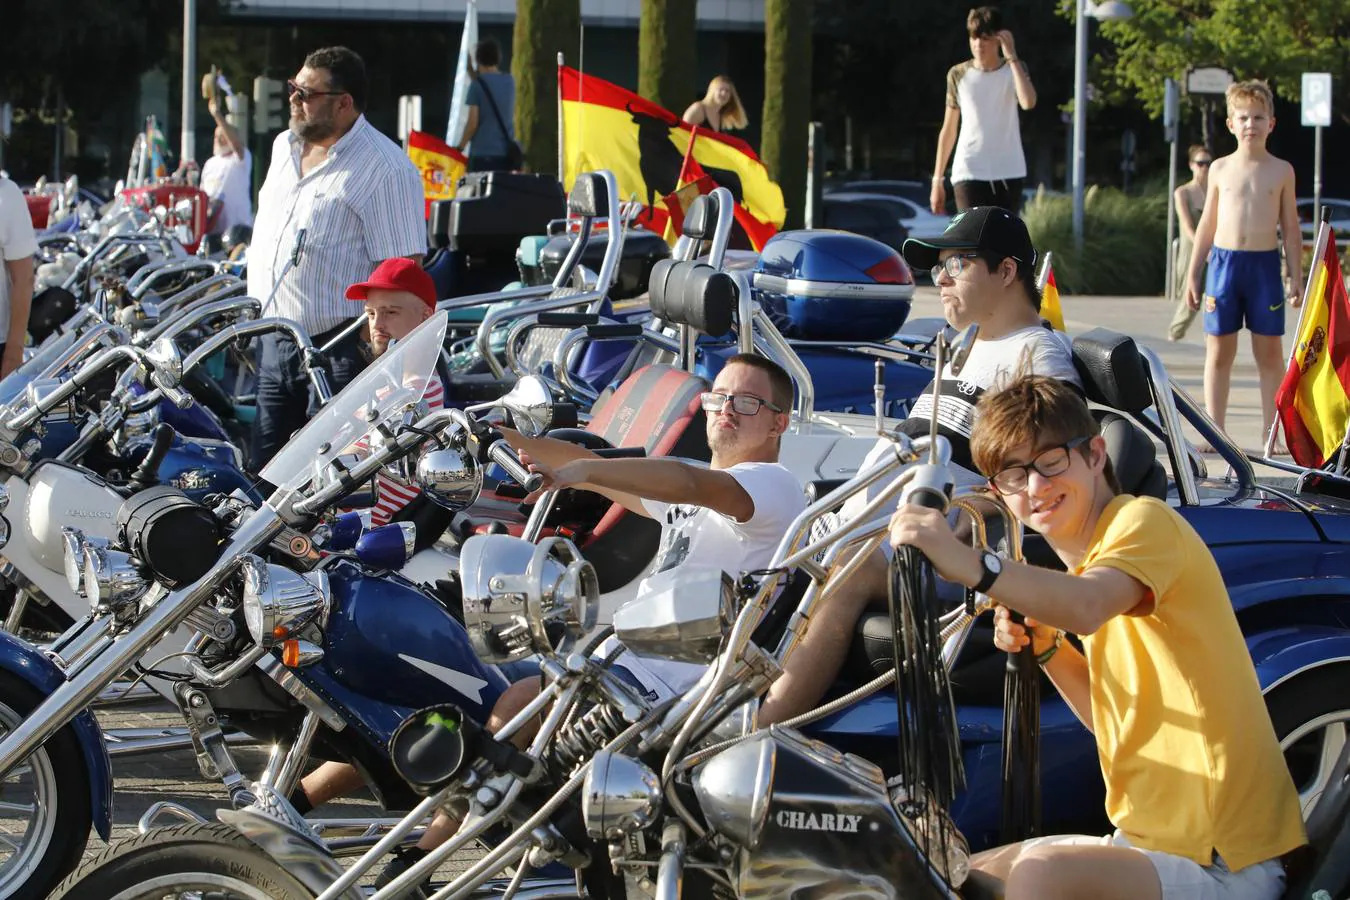 El paseo en moto de jóvenes con síndrome de Down, en imágenes